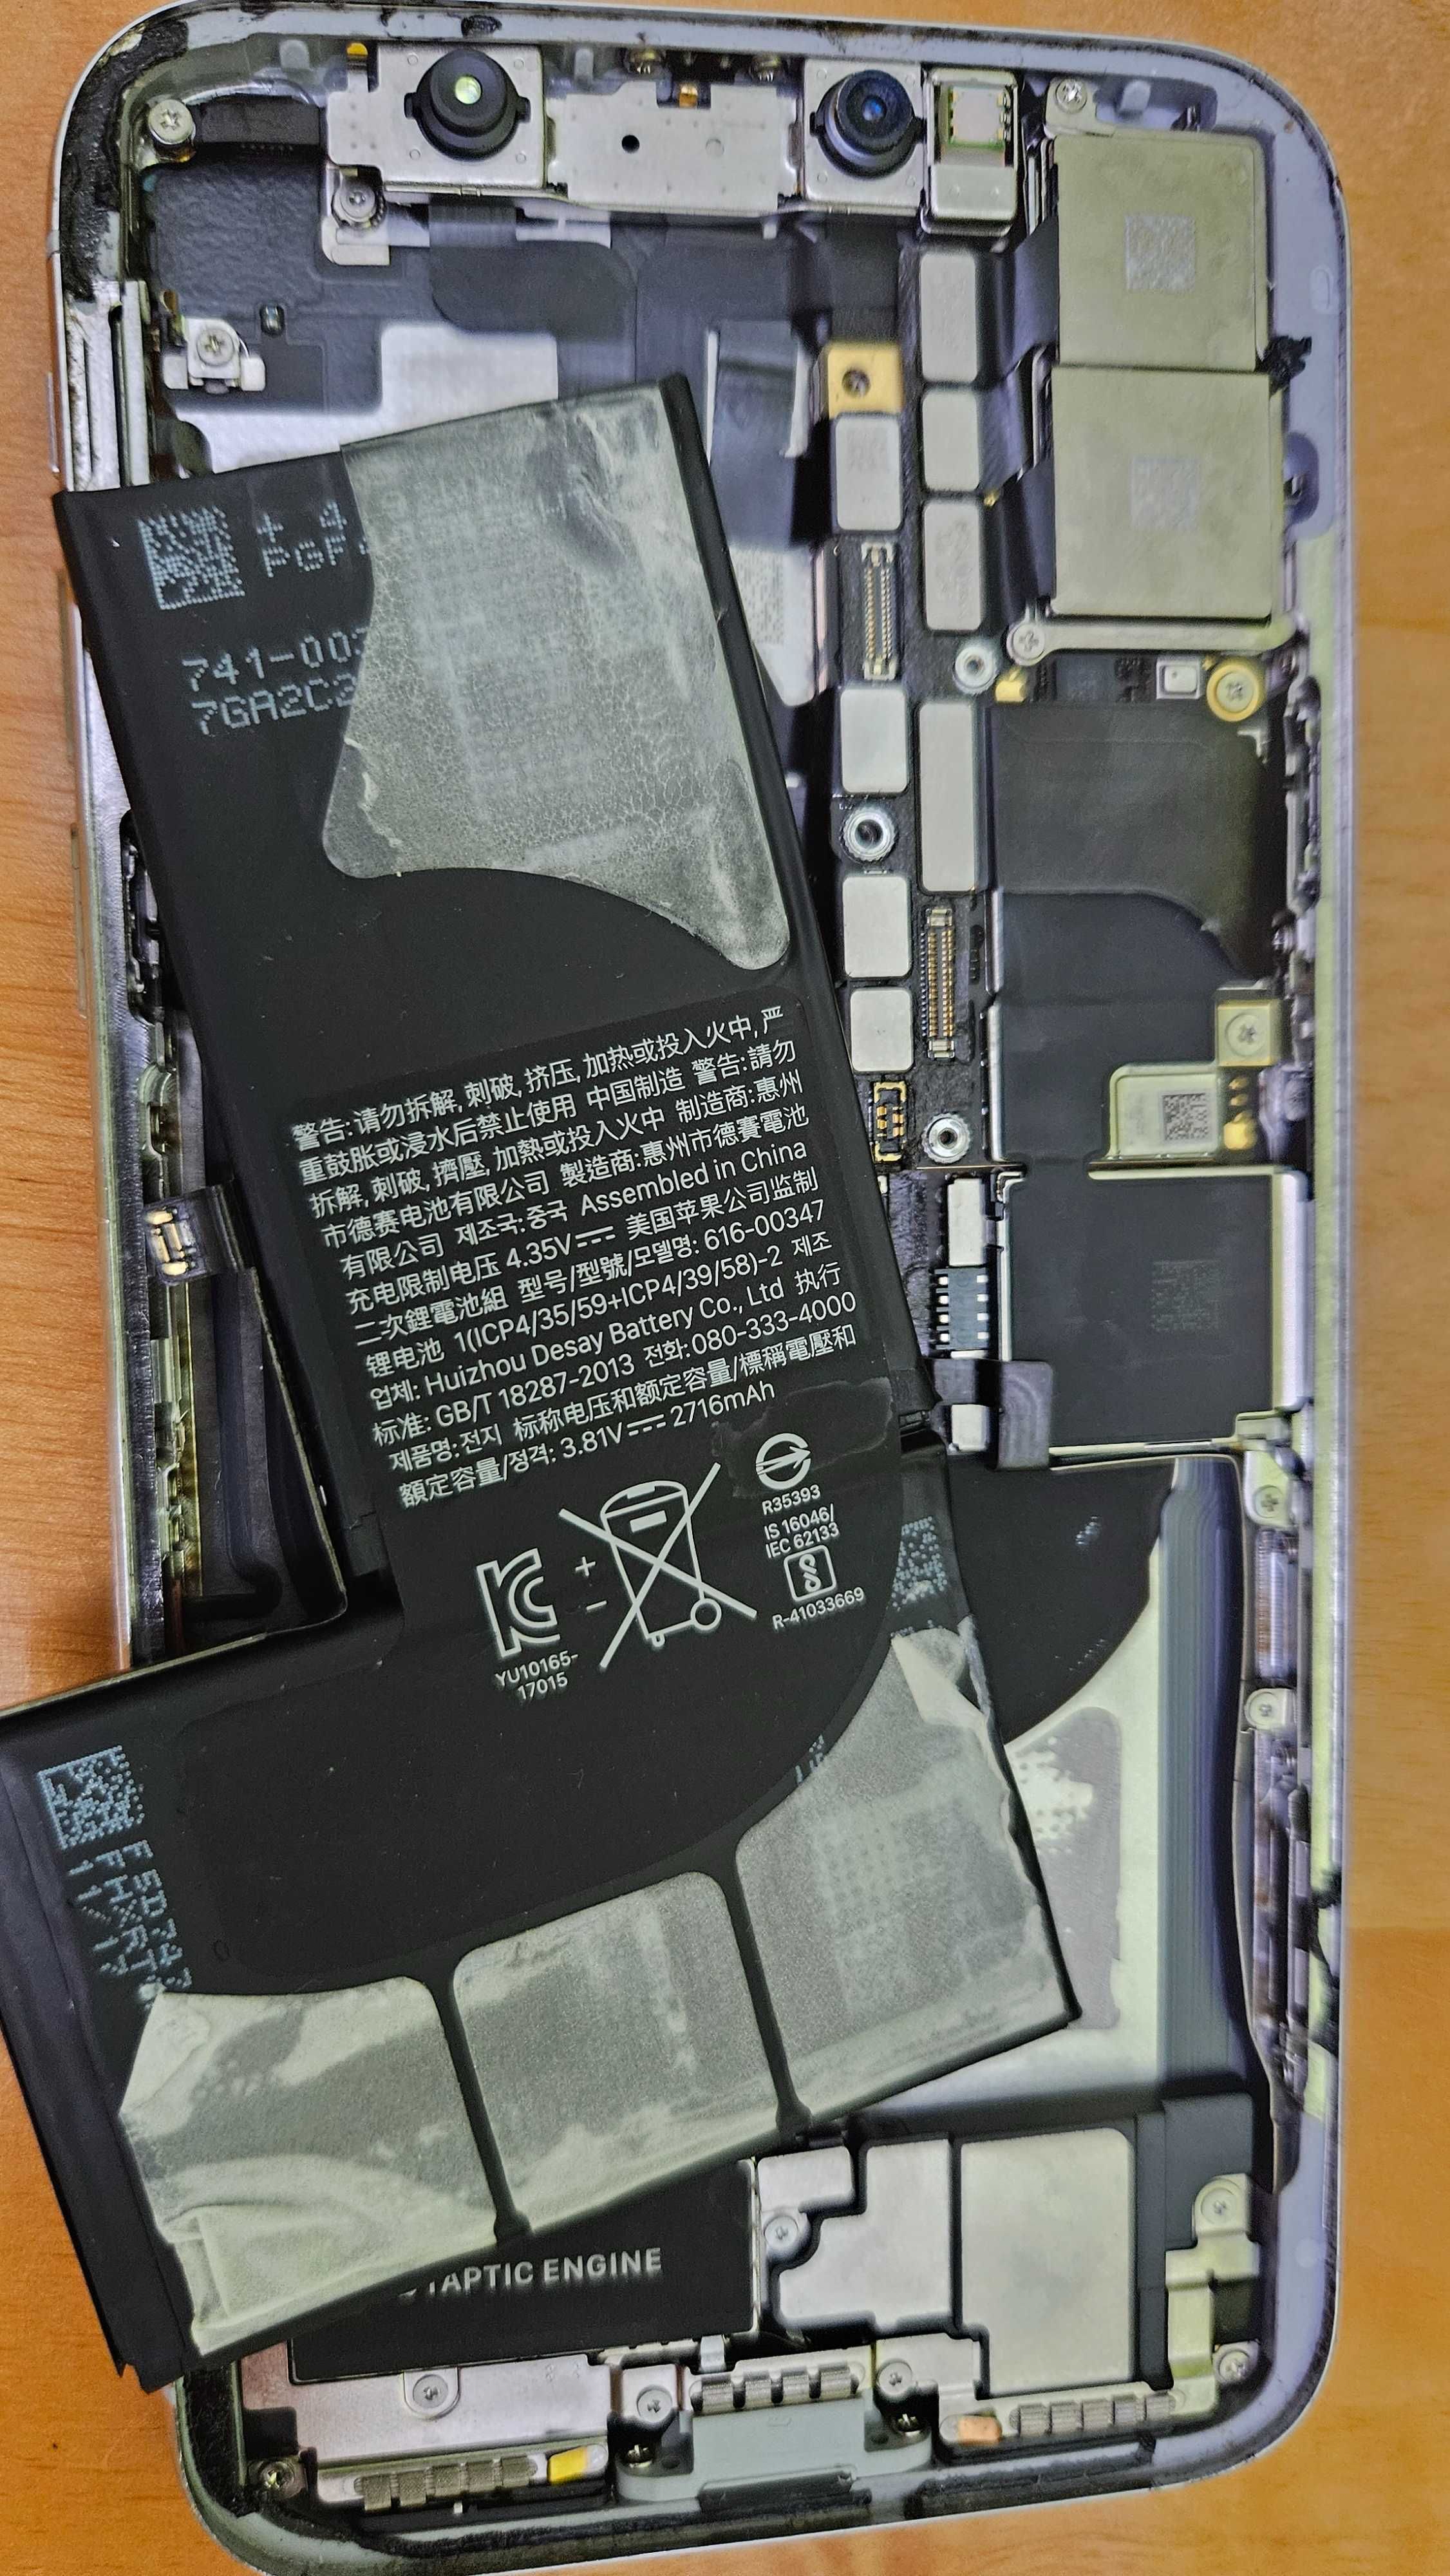 Baterie iphone X camera camere capac spate alb mufa incarcare difuzor